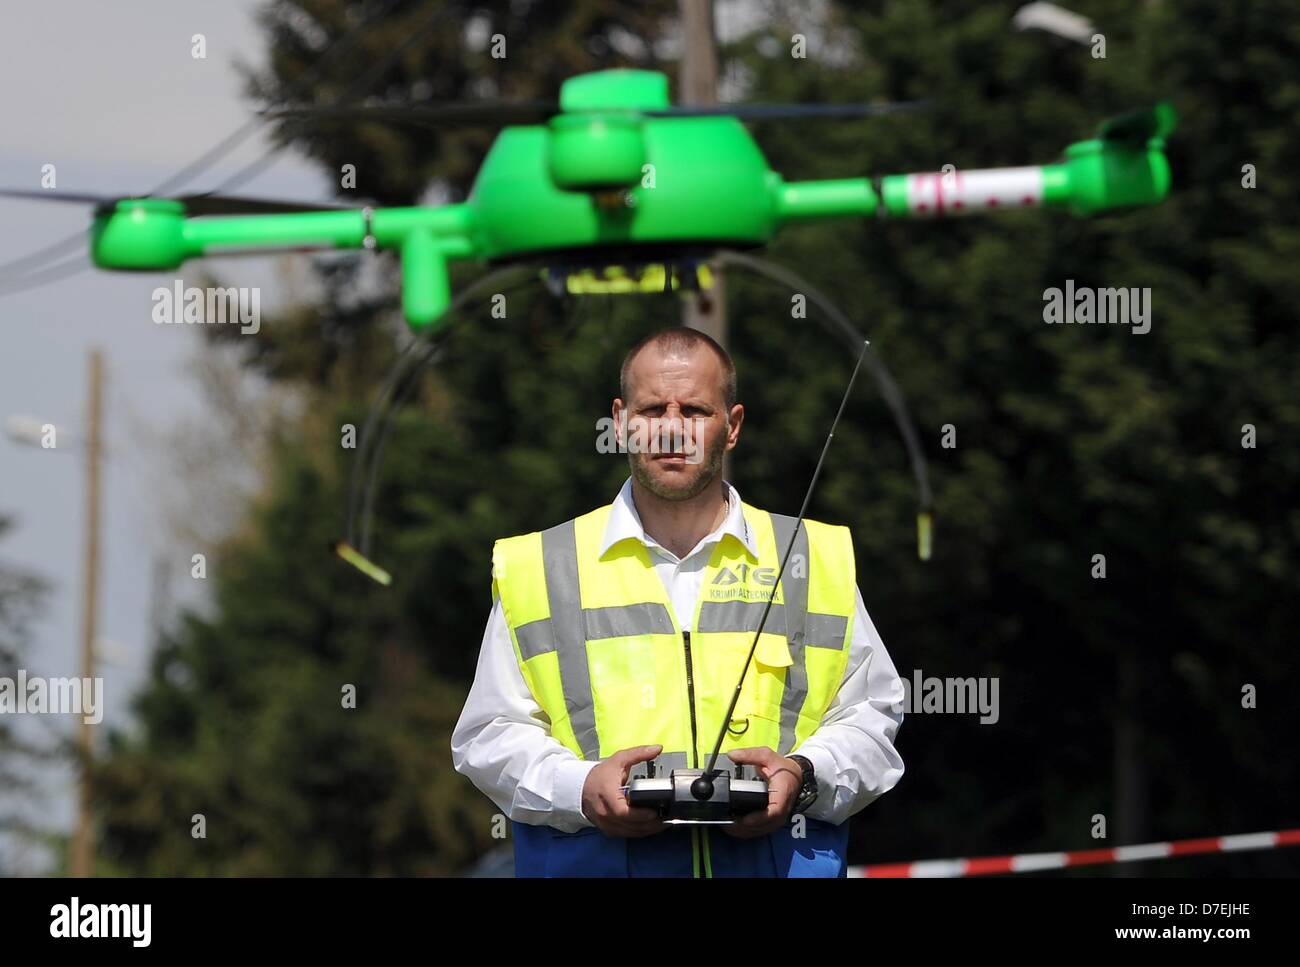 Drone pilota controlla il volo del suo drone a Berlino, Germania, 06 maggio 2013. Il controllo remoto elicottero è supposto di applicare il DNA artificiale a cavi di società di telecomunicazioni Telekom al fine di prevenire furti di rame. Foto: BRITTA PEDERSEN Foto Stock